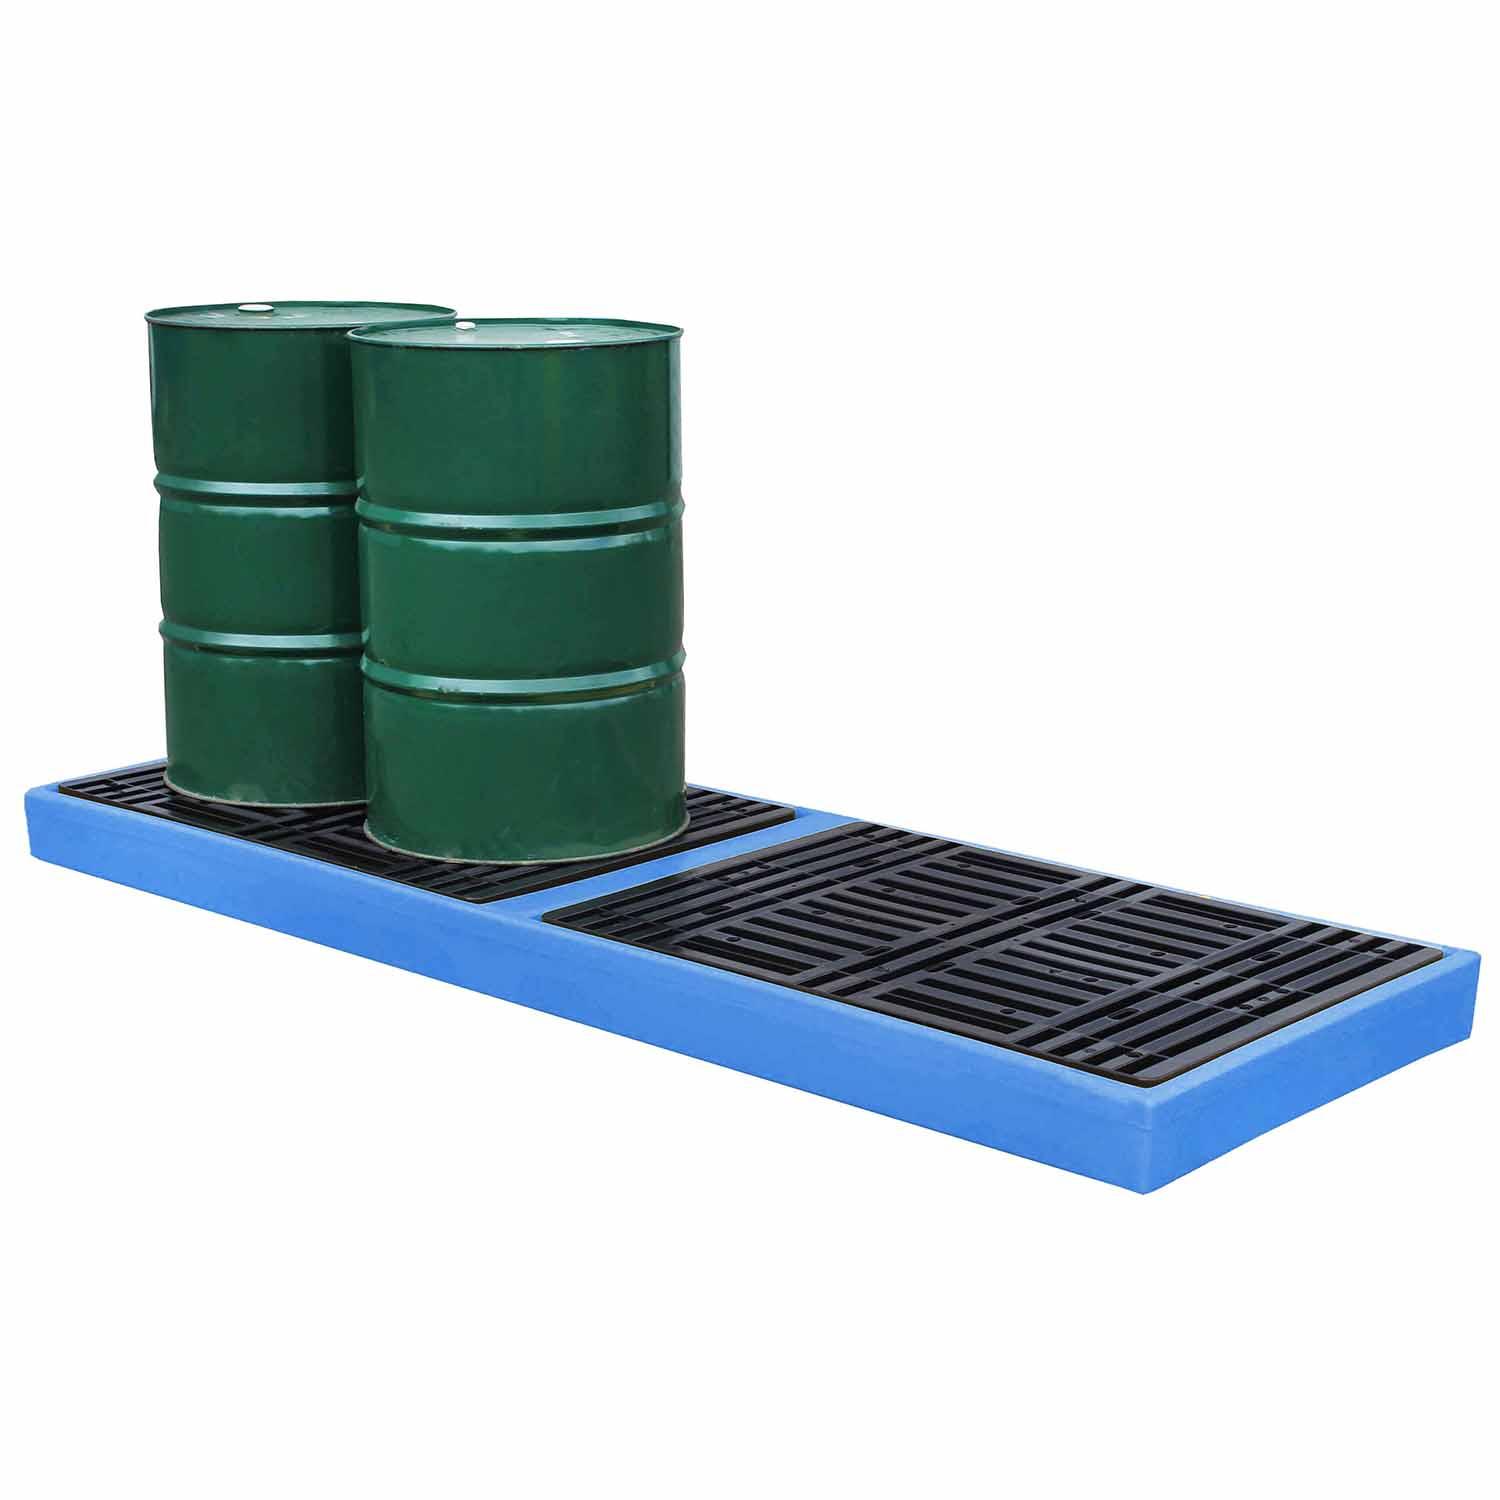 Flächenschutzelement aus Polyethylen (PE) für 4 Fässer in Reihe, Auffangvolumen 300 l, mit PE-Rost